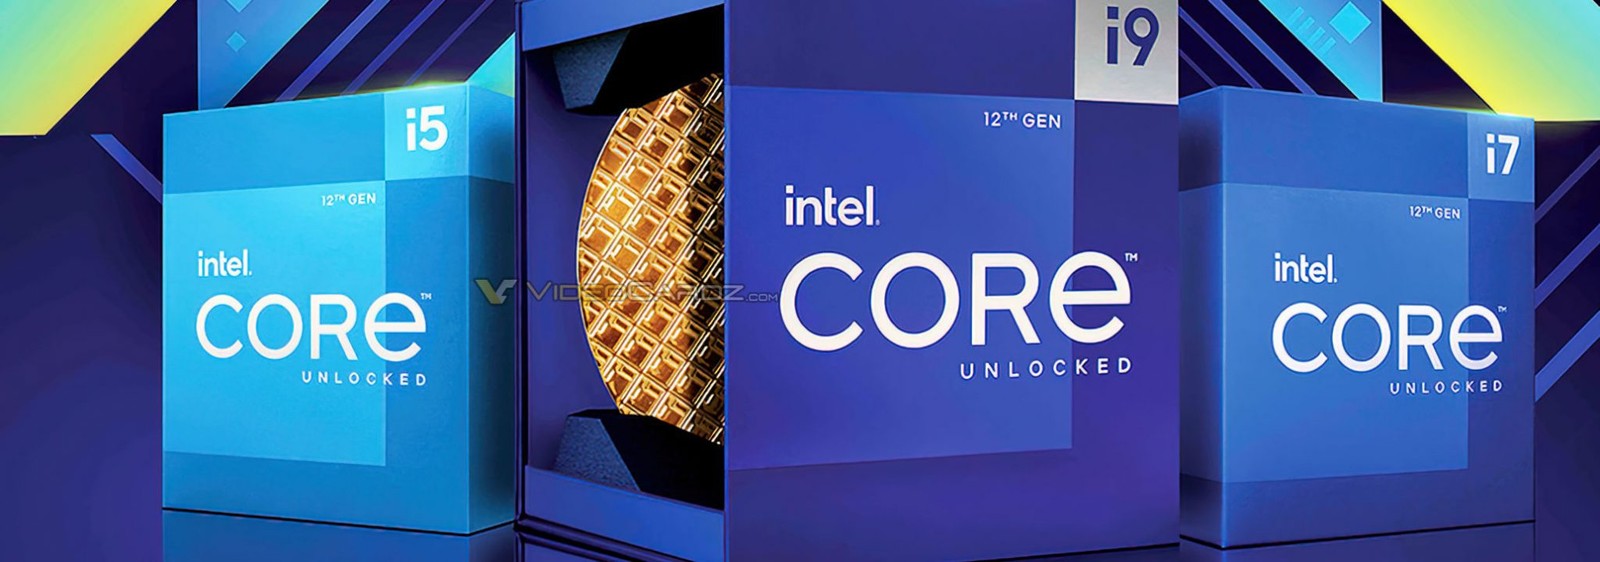 Tajemnica nowych procesorów Intela. Co 12. generacja Core kryje pod maską?